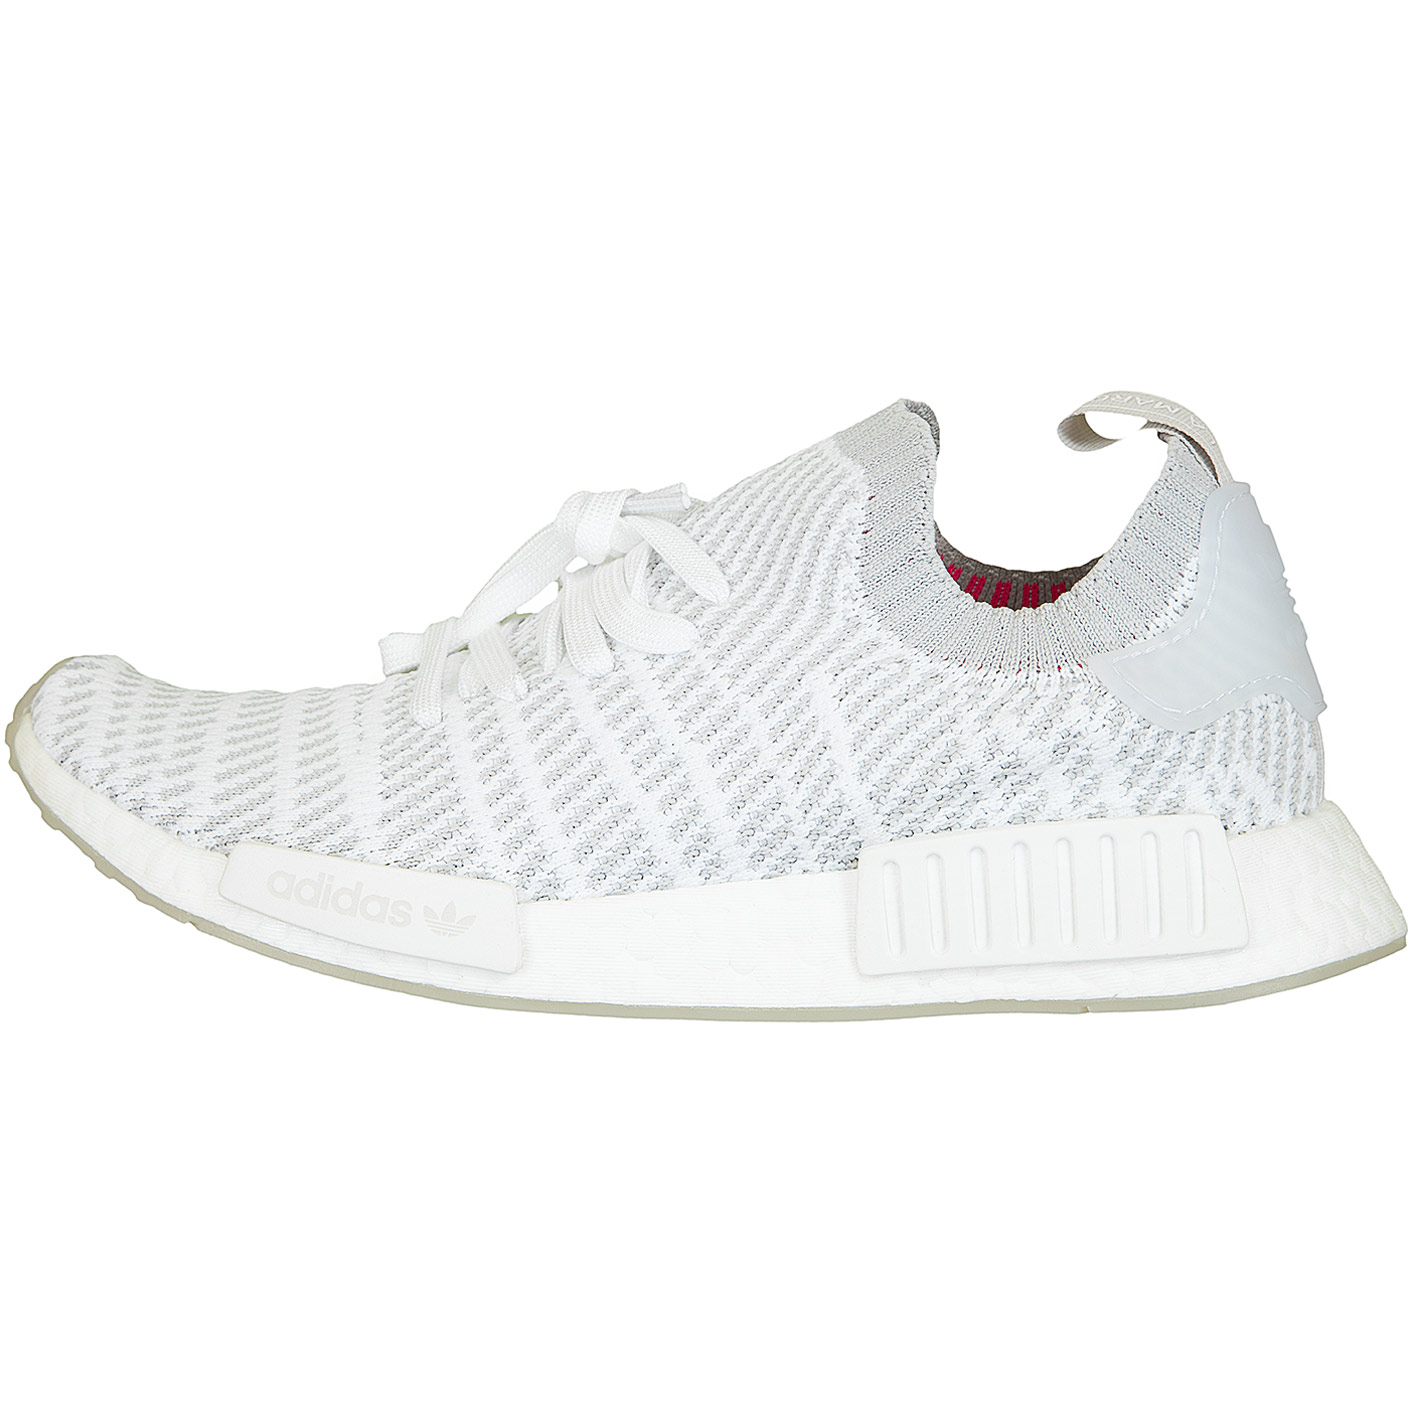 ☆ Adidas Originals Sneaker NMD R1 STLT Primeknit weiß/grau - hier bestellen!